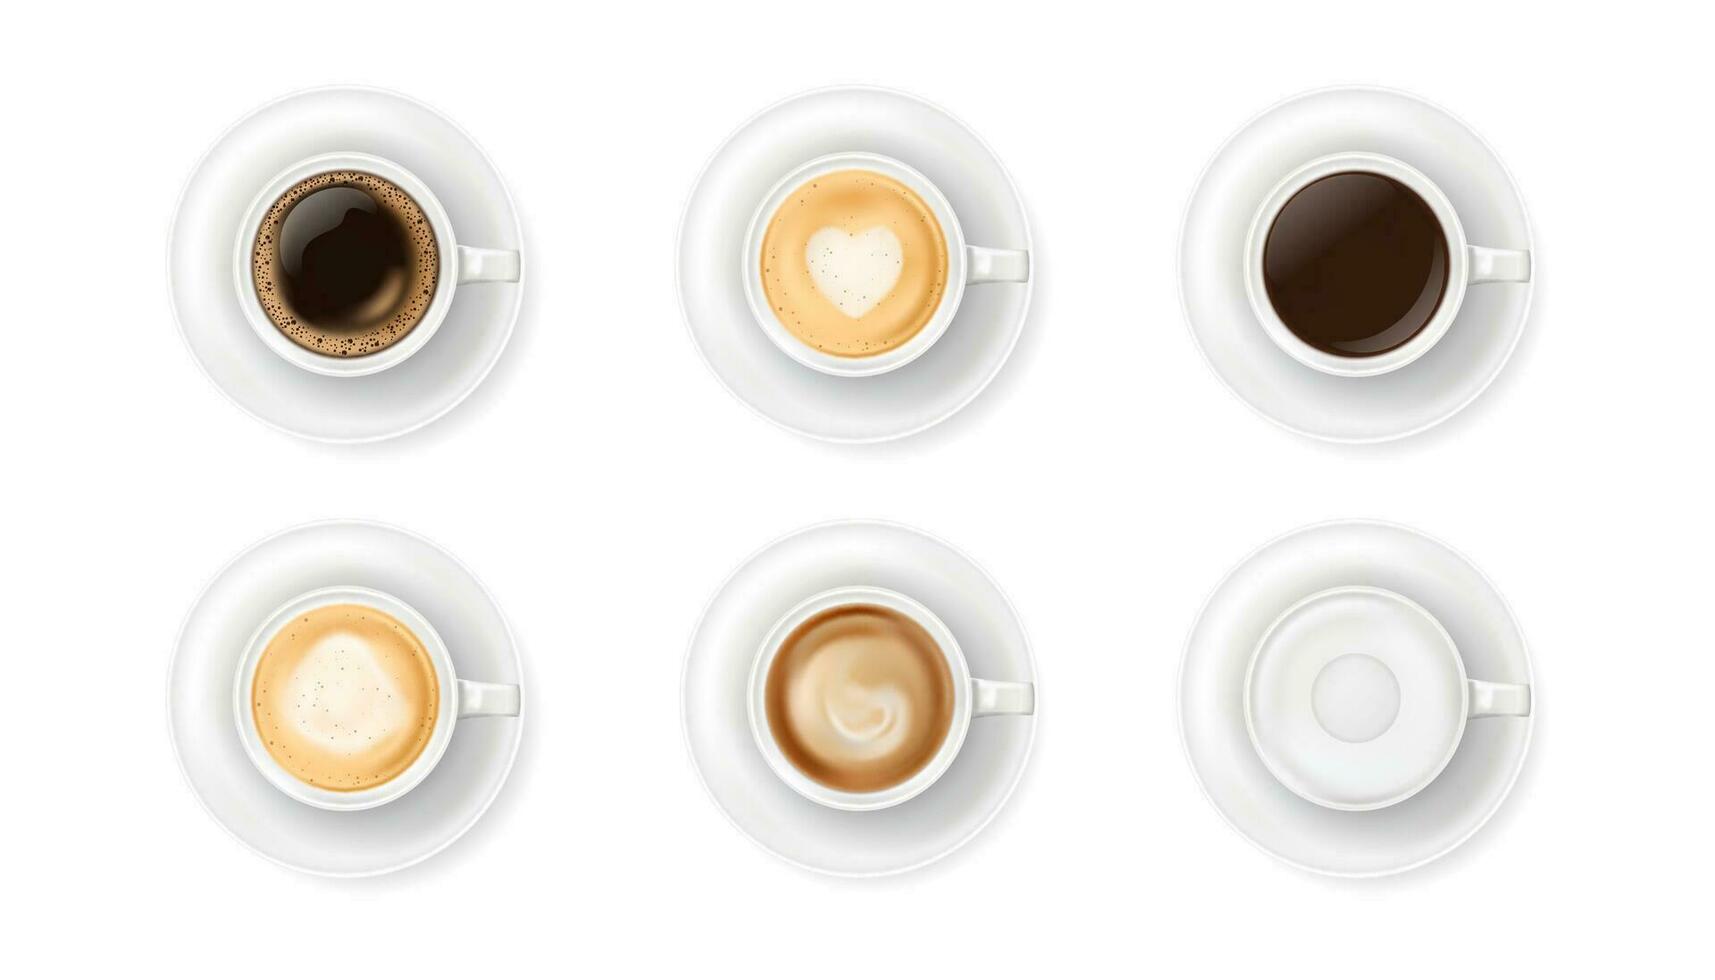 top visie Bij verschillend wit koffie cups Aan platen. realistisch vector illustratie van divers heet koffie drankjes mokken - espresso, latte, cappuccino, americano. 3d cafeïne drank elementen voor cafe menu